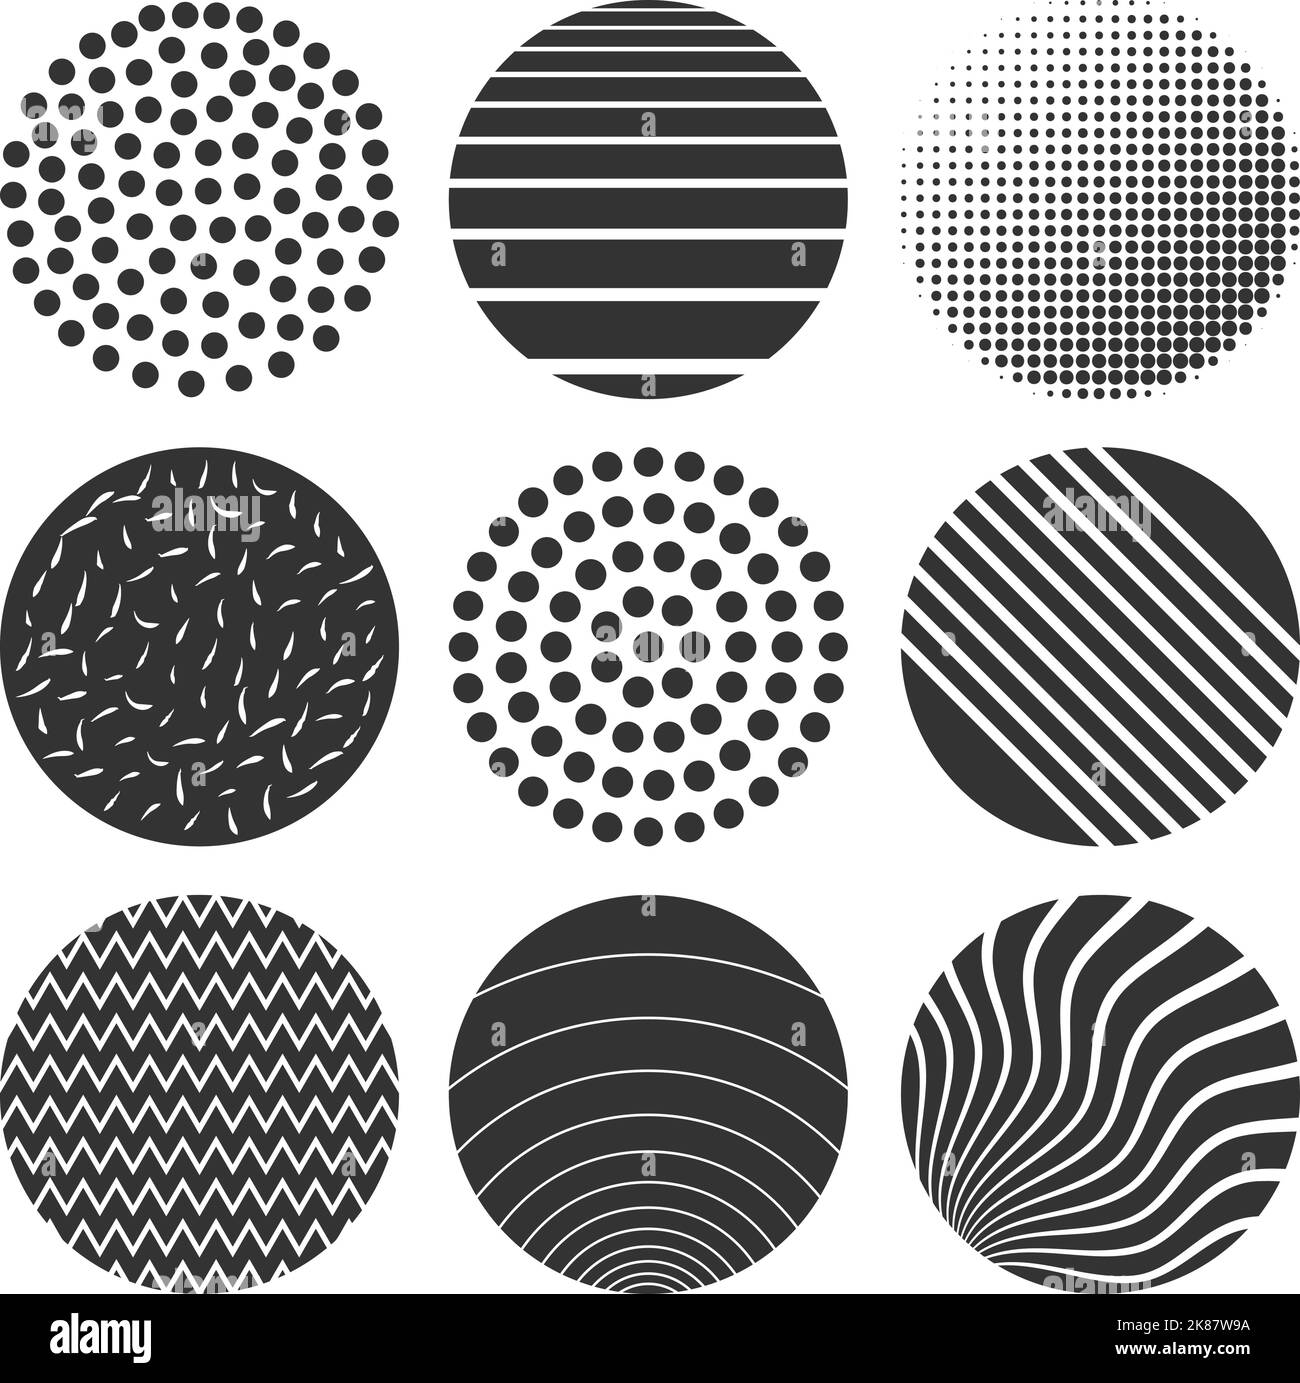 ensemble de formes géométriques circulaires, éléments de design vintage et rétro isolés sur une illustration vectorielle blanche Illustration de Vecteur